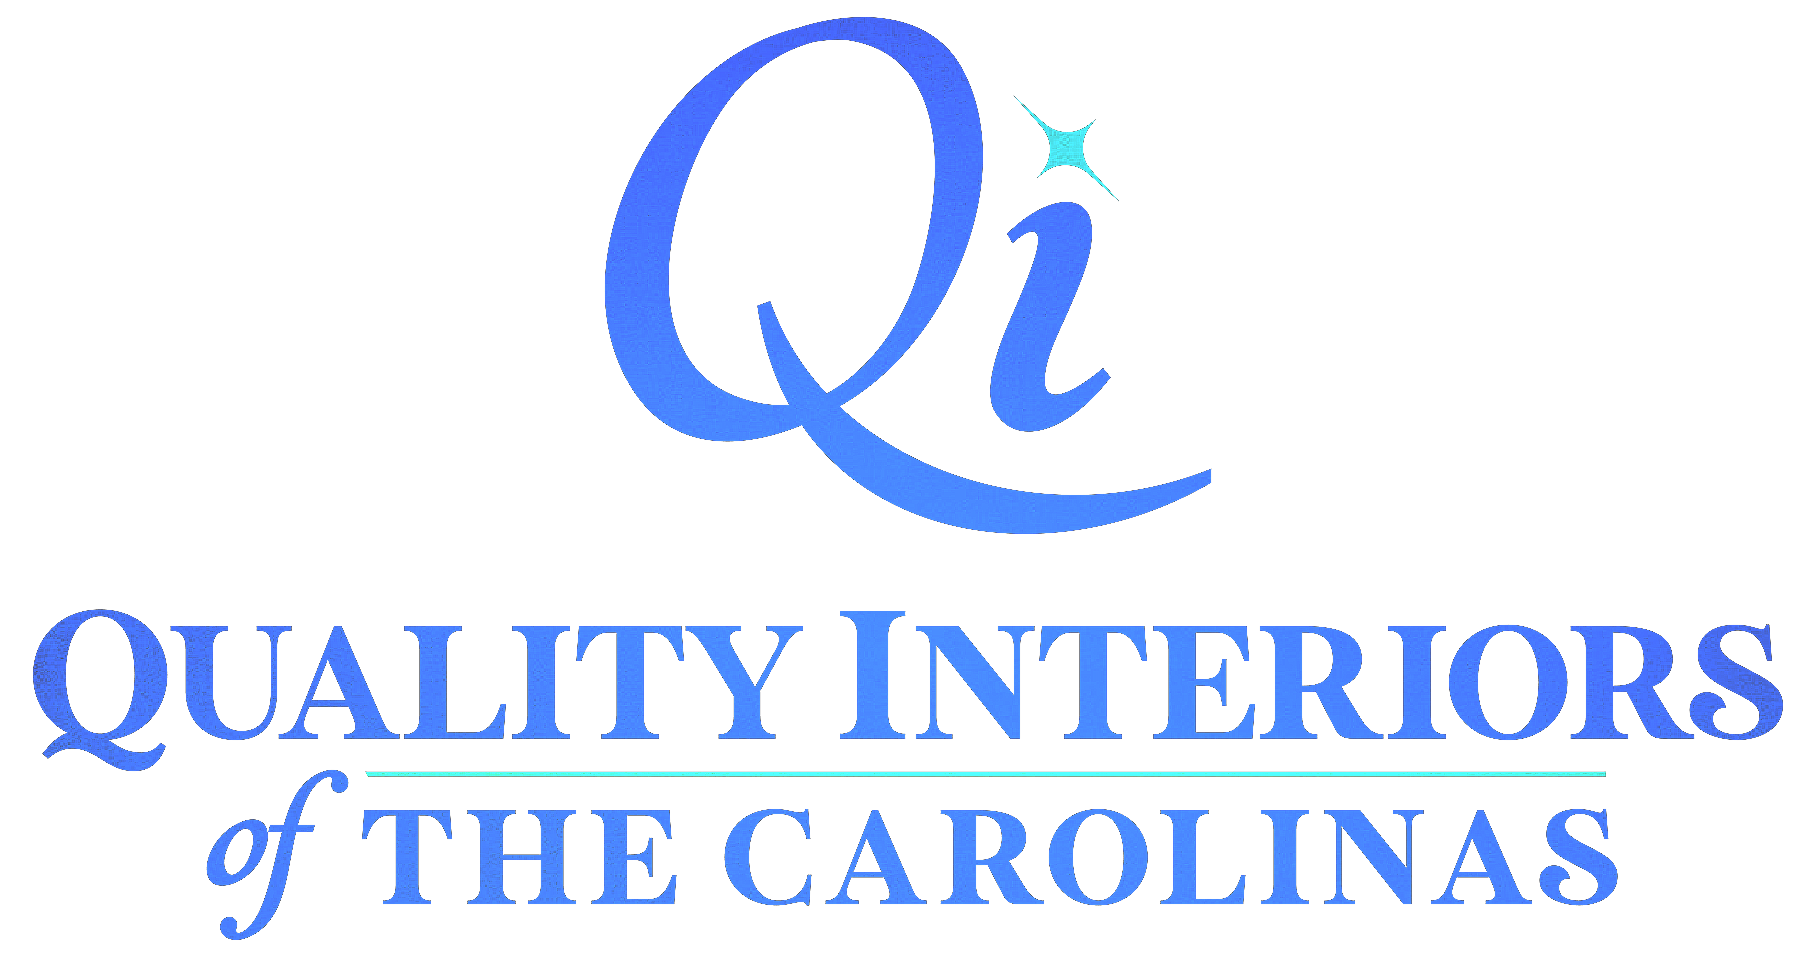 A blue logo for quality interiors of the carolina 's